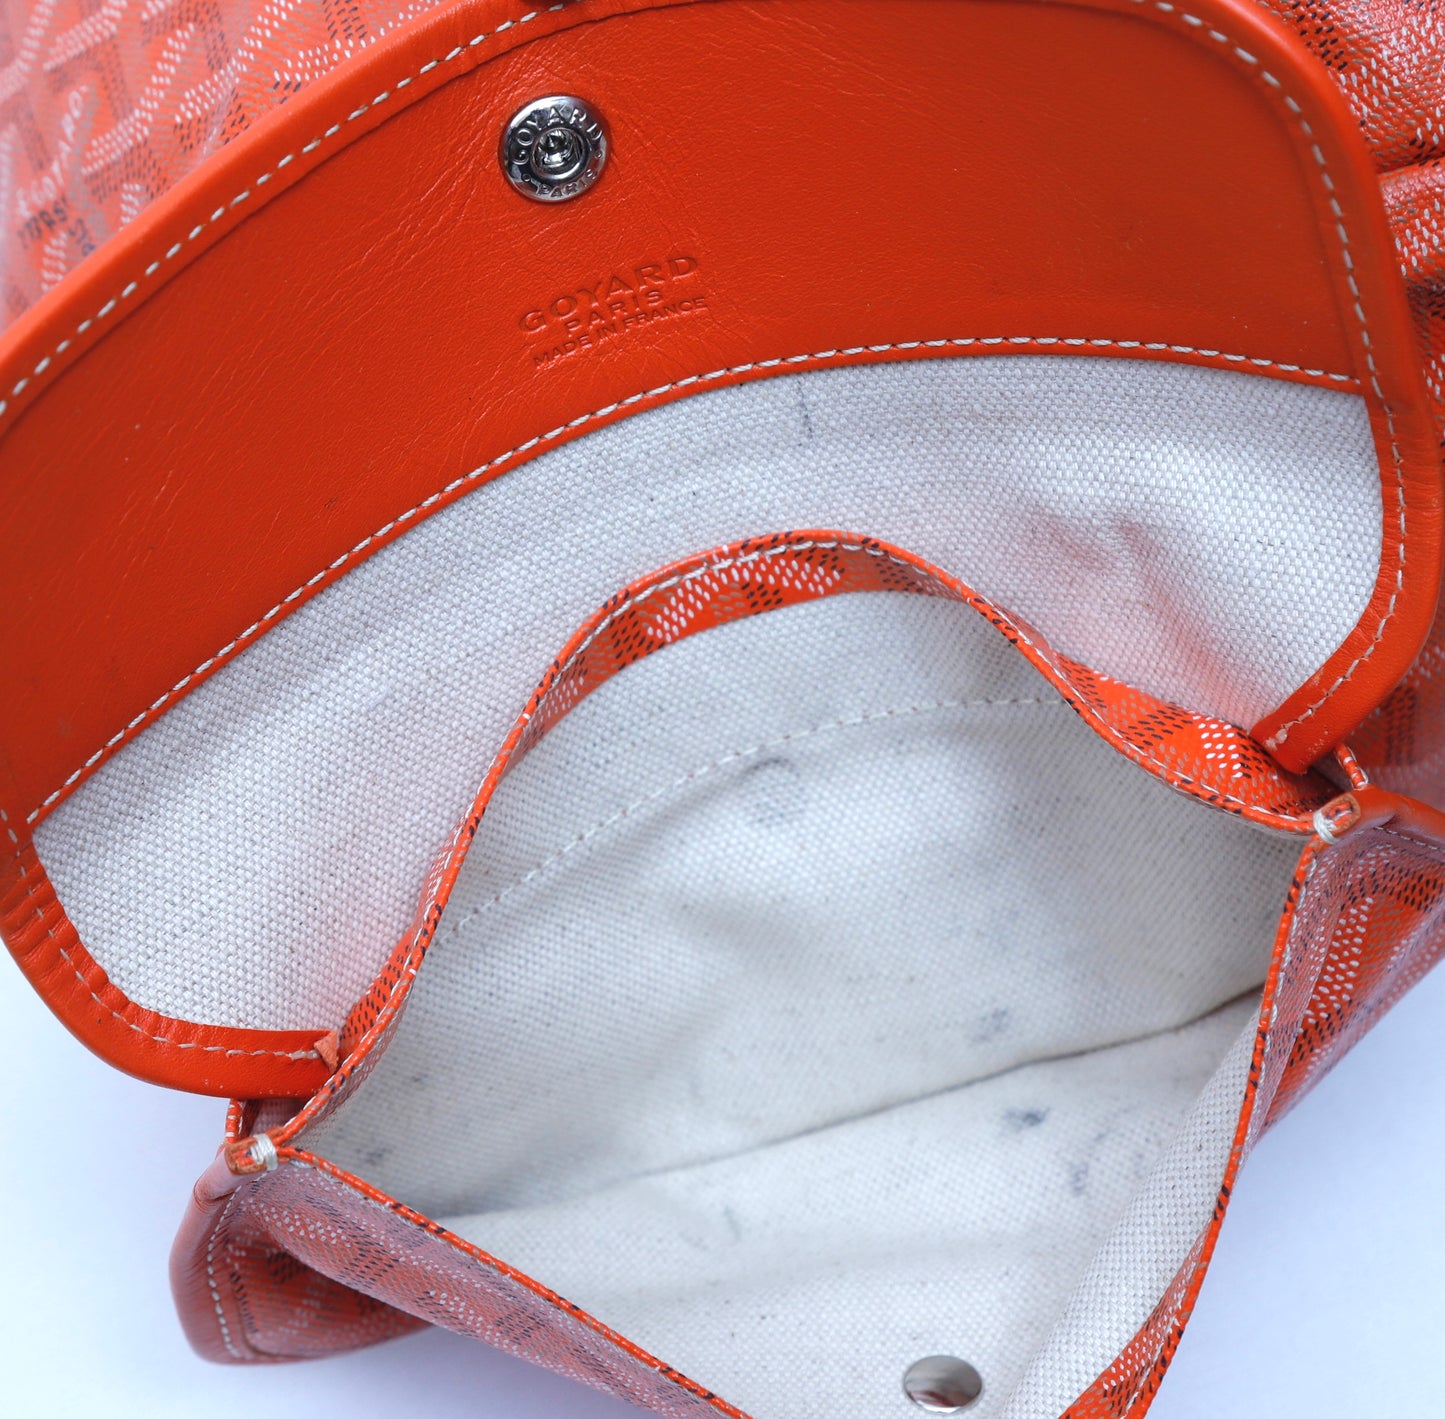 Goyard St. Louis PM Bag in Orange Colour – Luxe Marché India